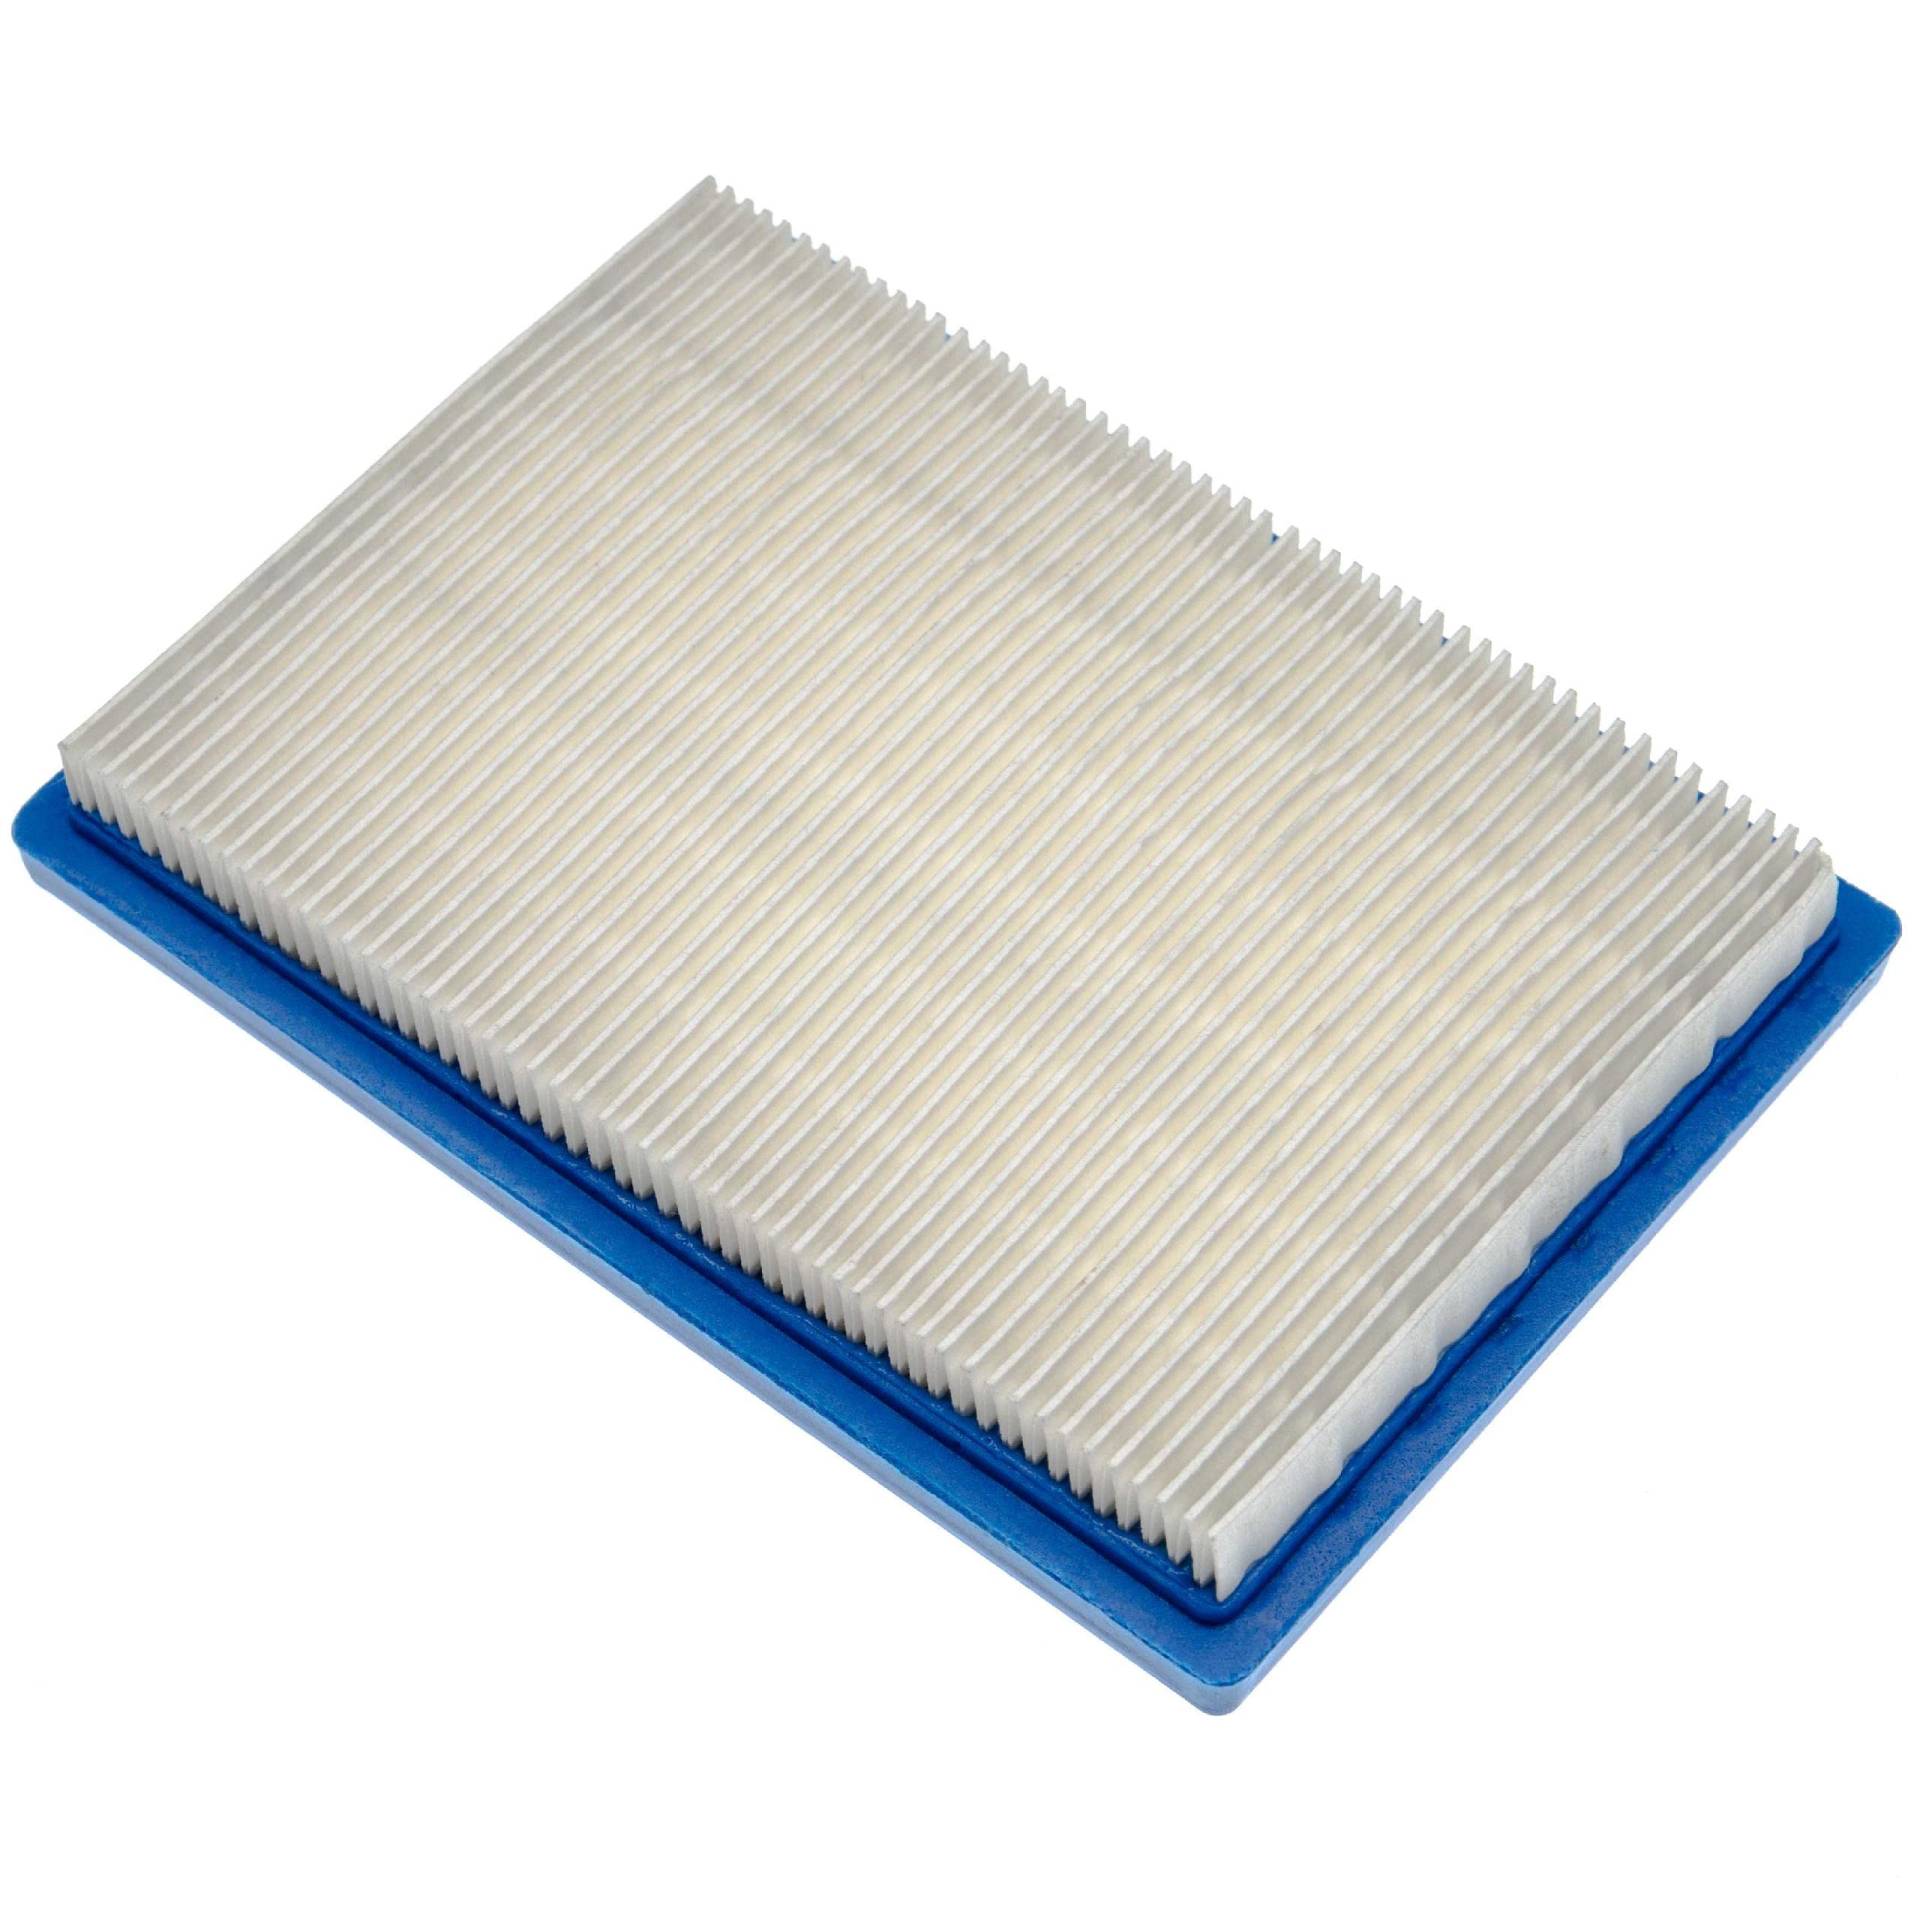 vhbw Ersatzfilter (1x Luftfilter) Ersatz für Briggs & Stratton 397795S, 4102 für Rasenmäher, 16 x 11,3 x 2,1 cm, Blau, Weiß von vhbw